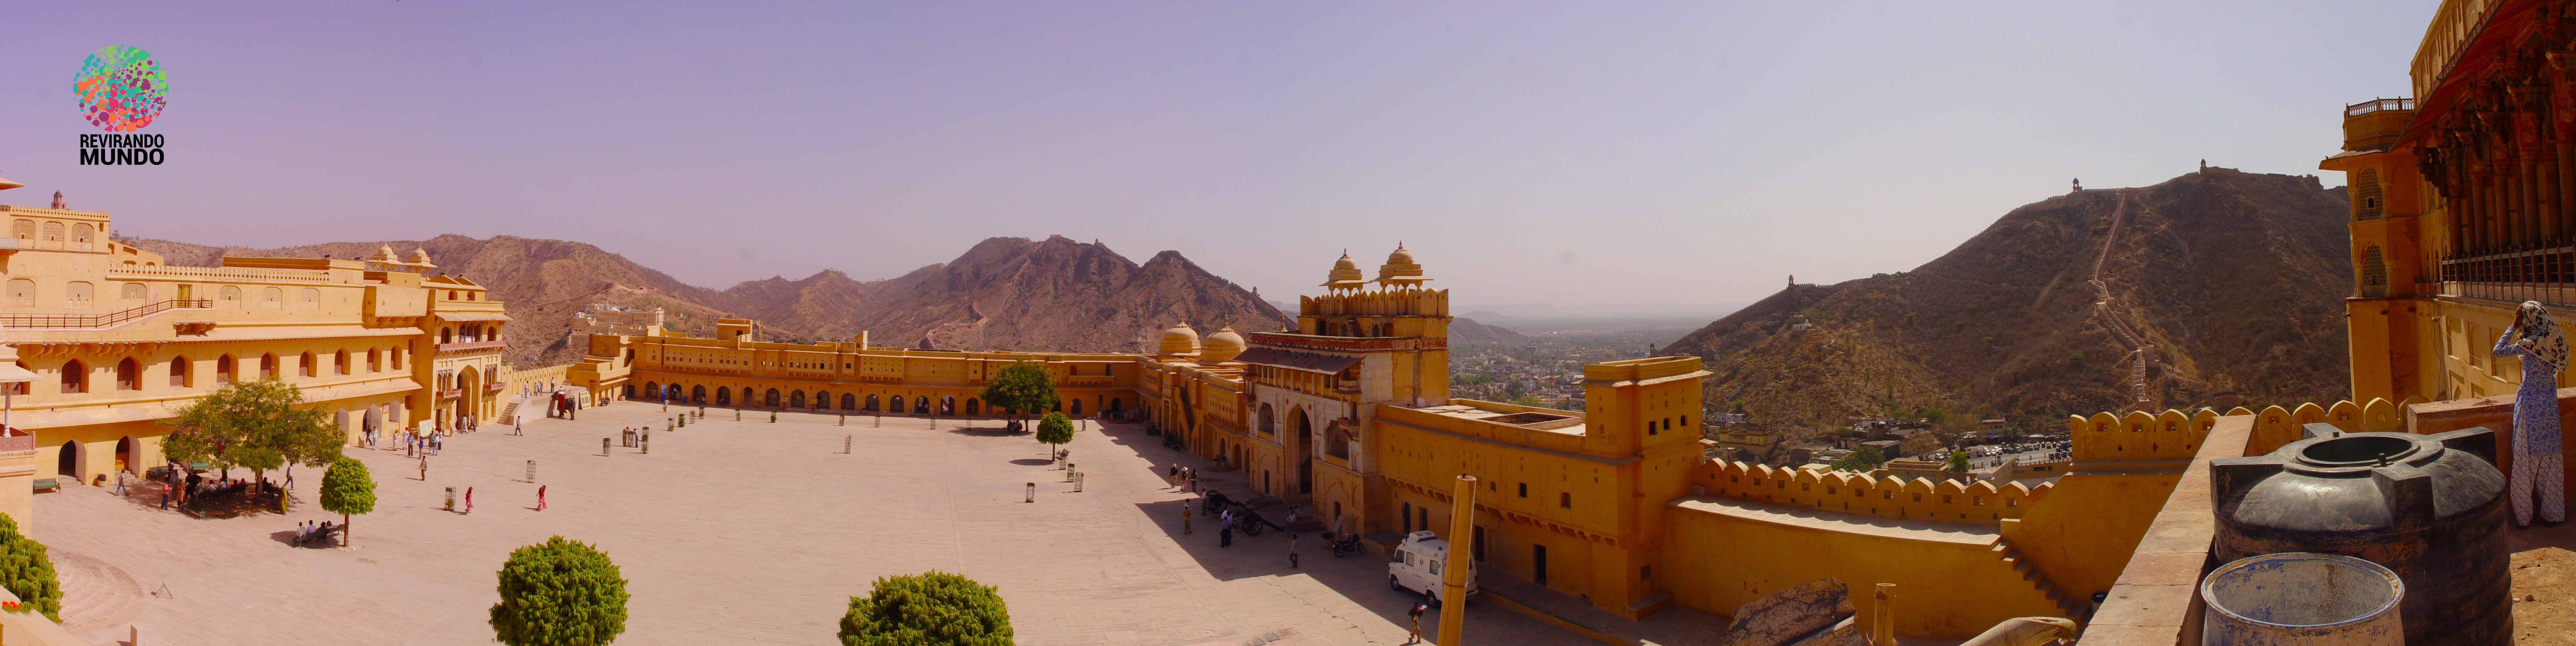 Fort Amber - Jaipur